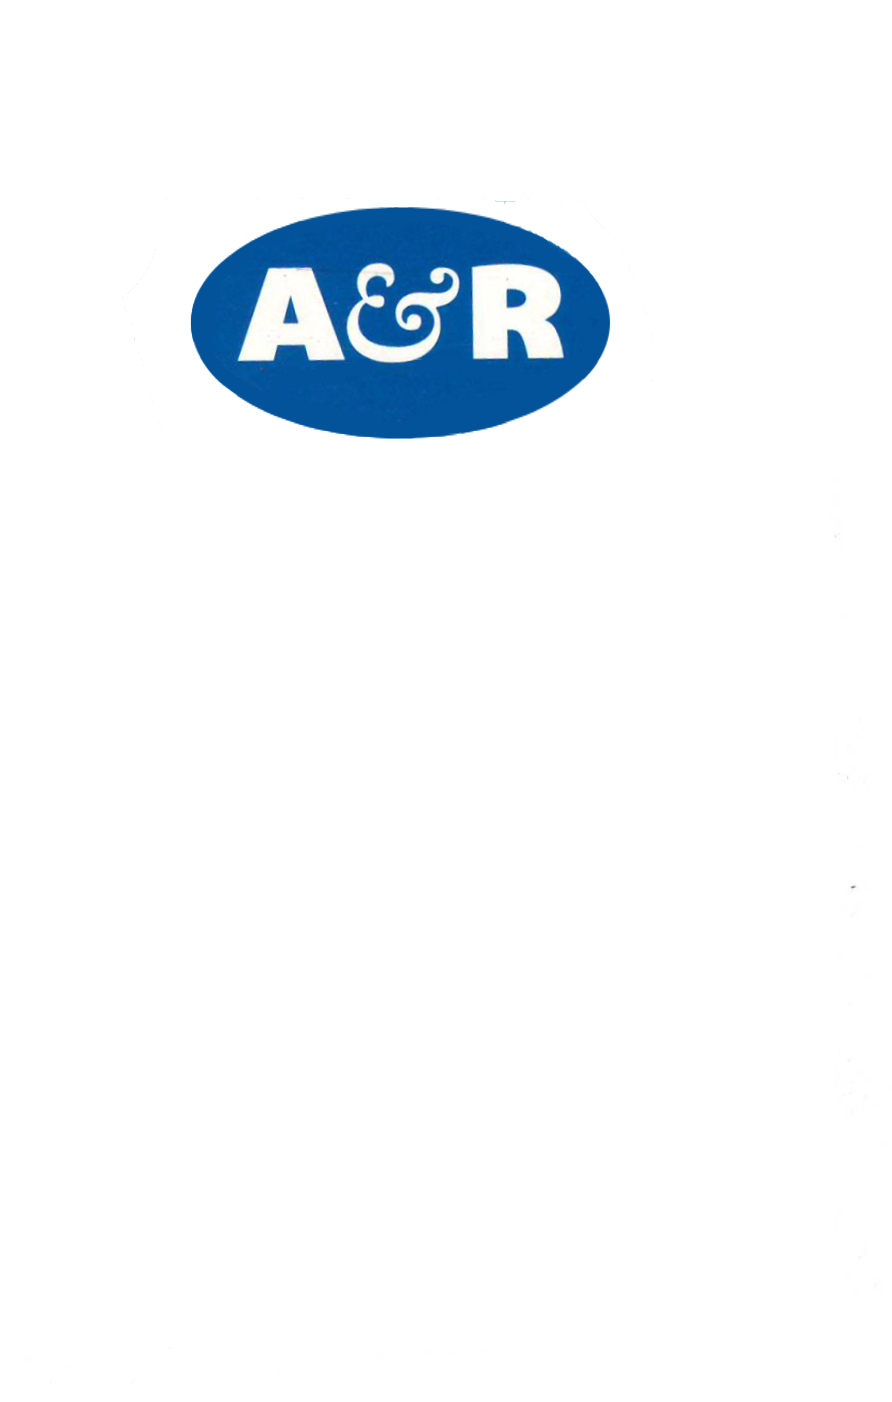 A & R Truck Repair LTD | car repair | 2012 Mason St, Abbotsford, BC V2T 6E4, Canada | 6048321281 OR +1 604-832-1281